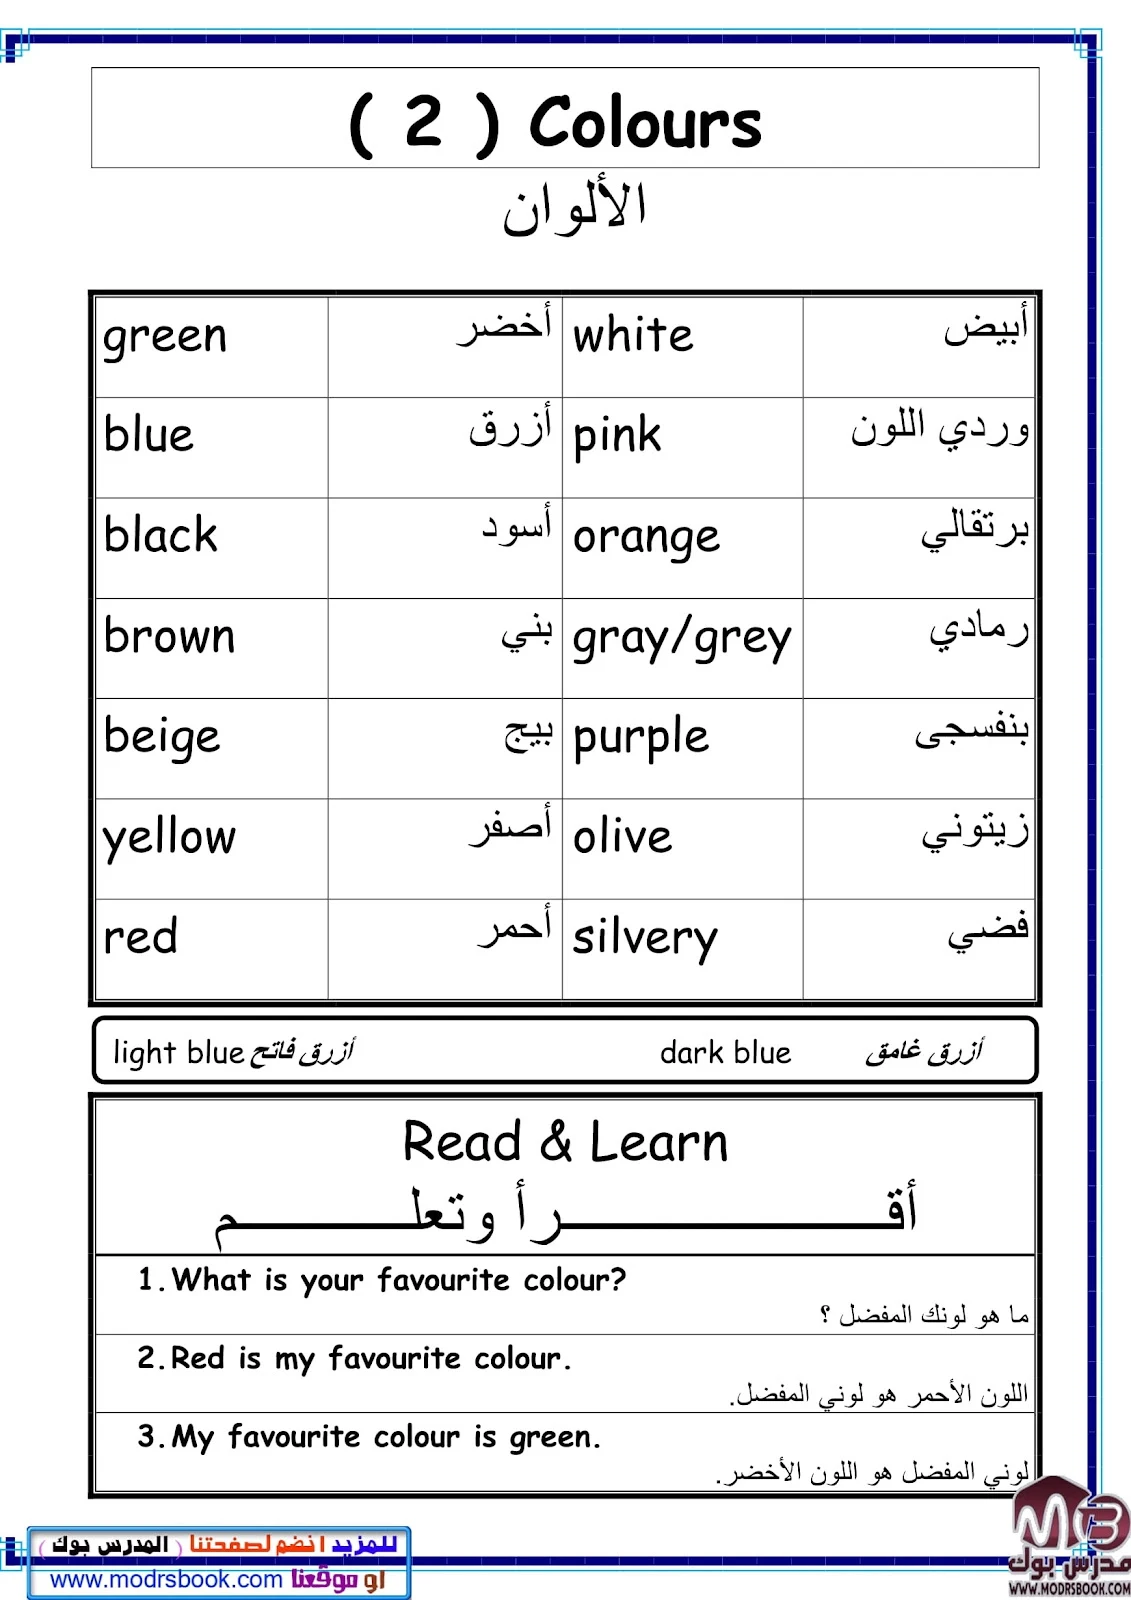 أفضل ملزمة لتعلم القراءة والكتابة للأطفال في اللغة الإنجليزية pdf تحميل مباشر